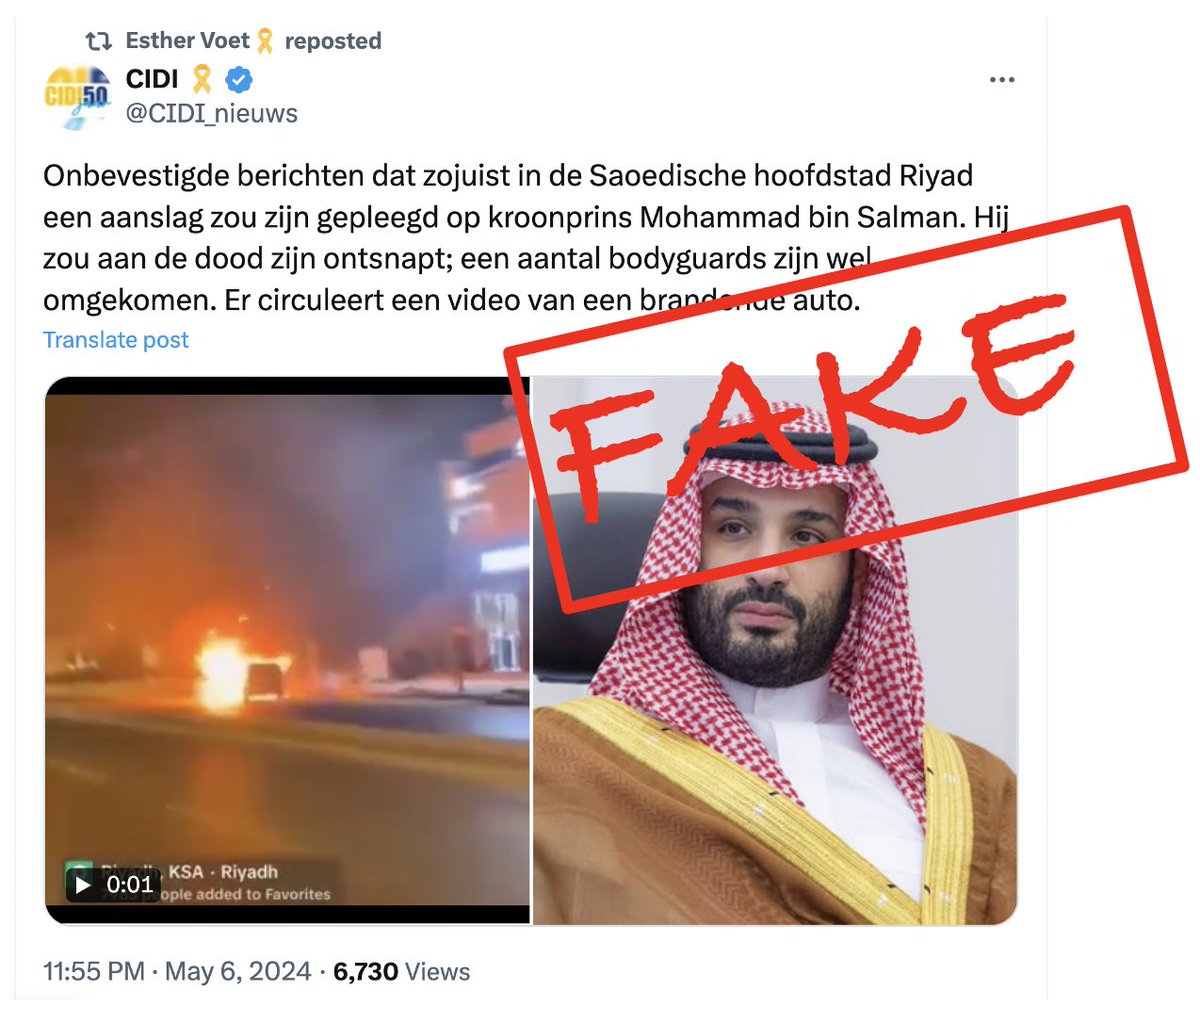 Fake bericht over moordaanslag op Saoedische prins Bin Salman. Video van brandende auto in Ryadh is van 16 maart. Ik zou het even rechtzetten, @CIDI_nieuws. twitter.com/DFRAC_org/stat…